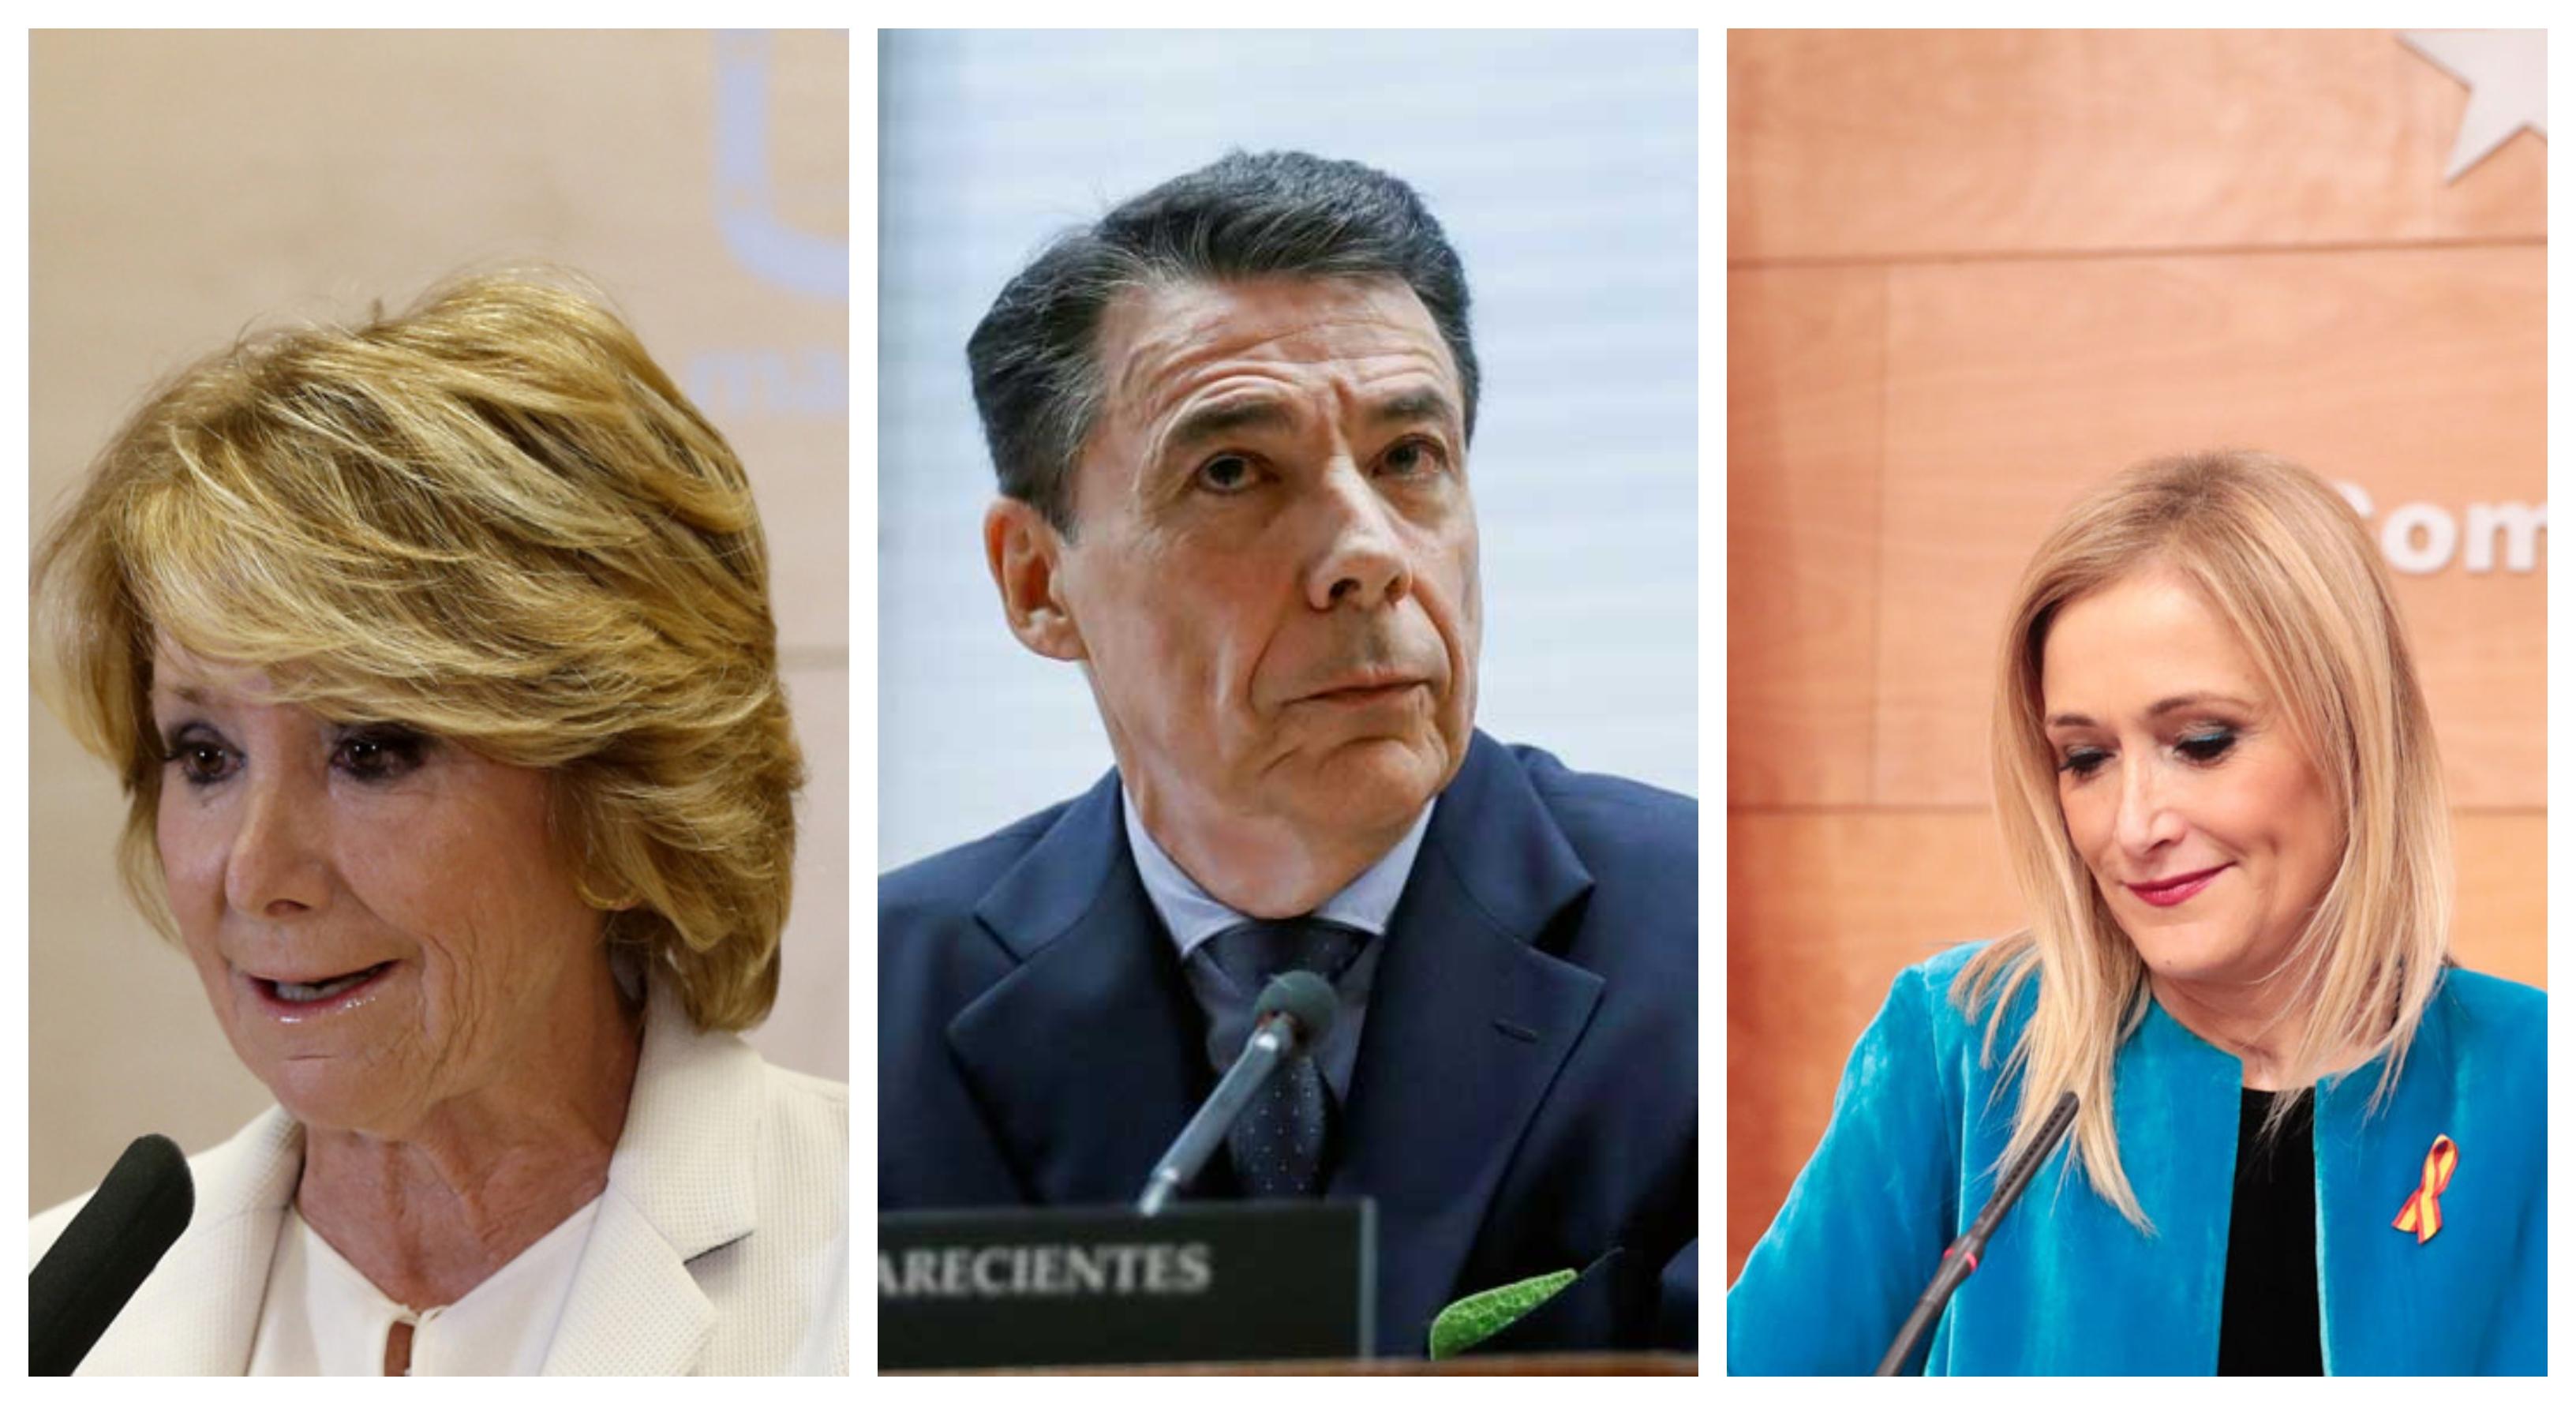 Esperanza Aguirre, Ignacio González y Cristina Cifuentes. Fuente: elaboración propia.